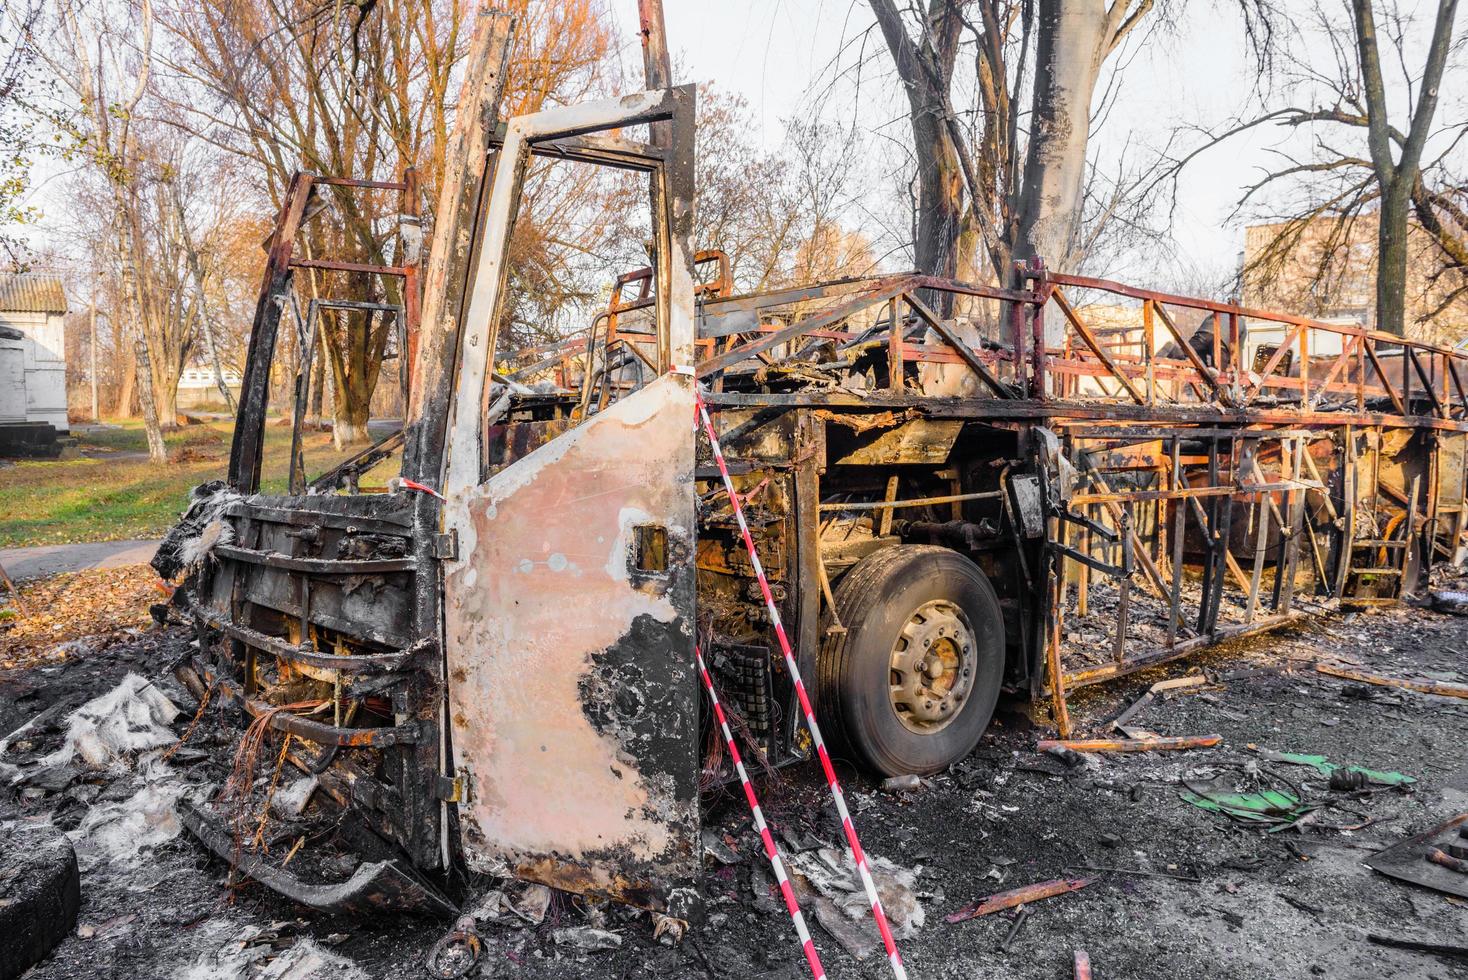 verbrande bus wordt op straat gezien nadat hij tijdens het reizen in brand is gevlogen, na brand foto